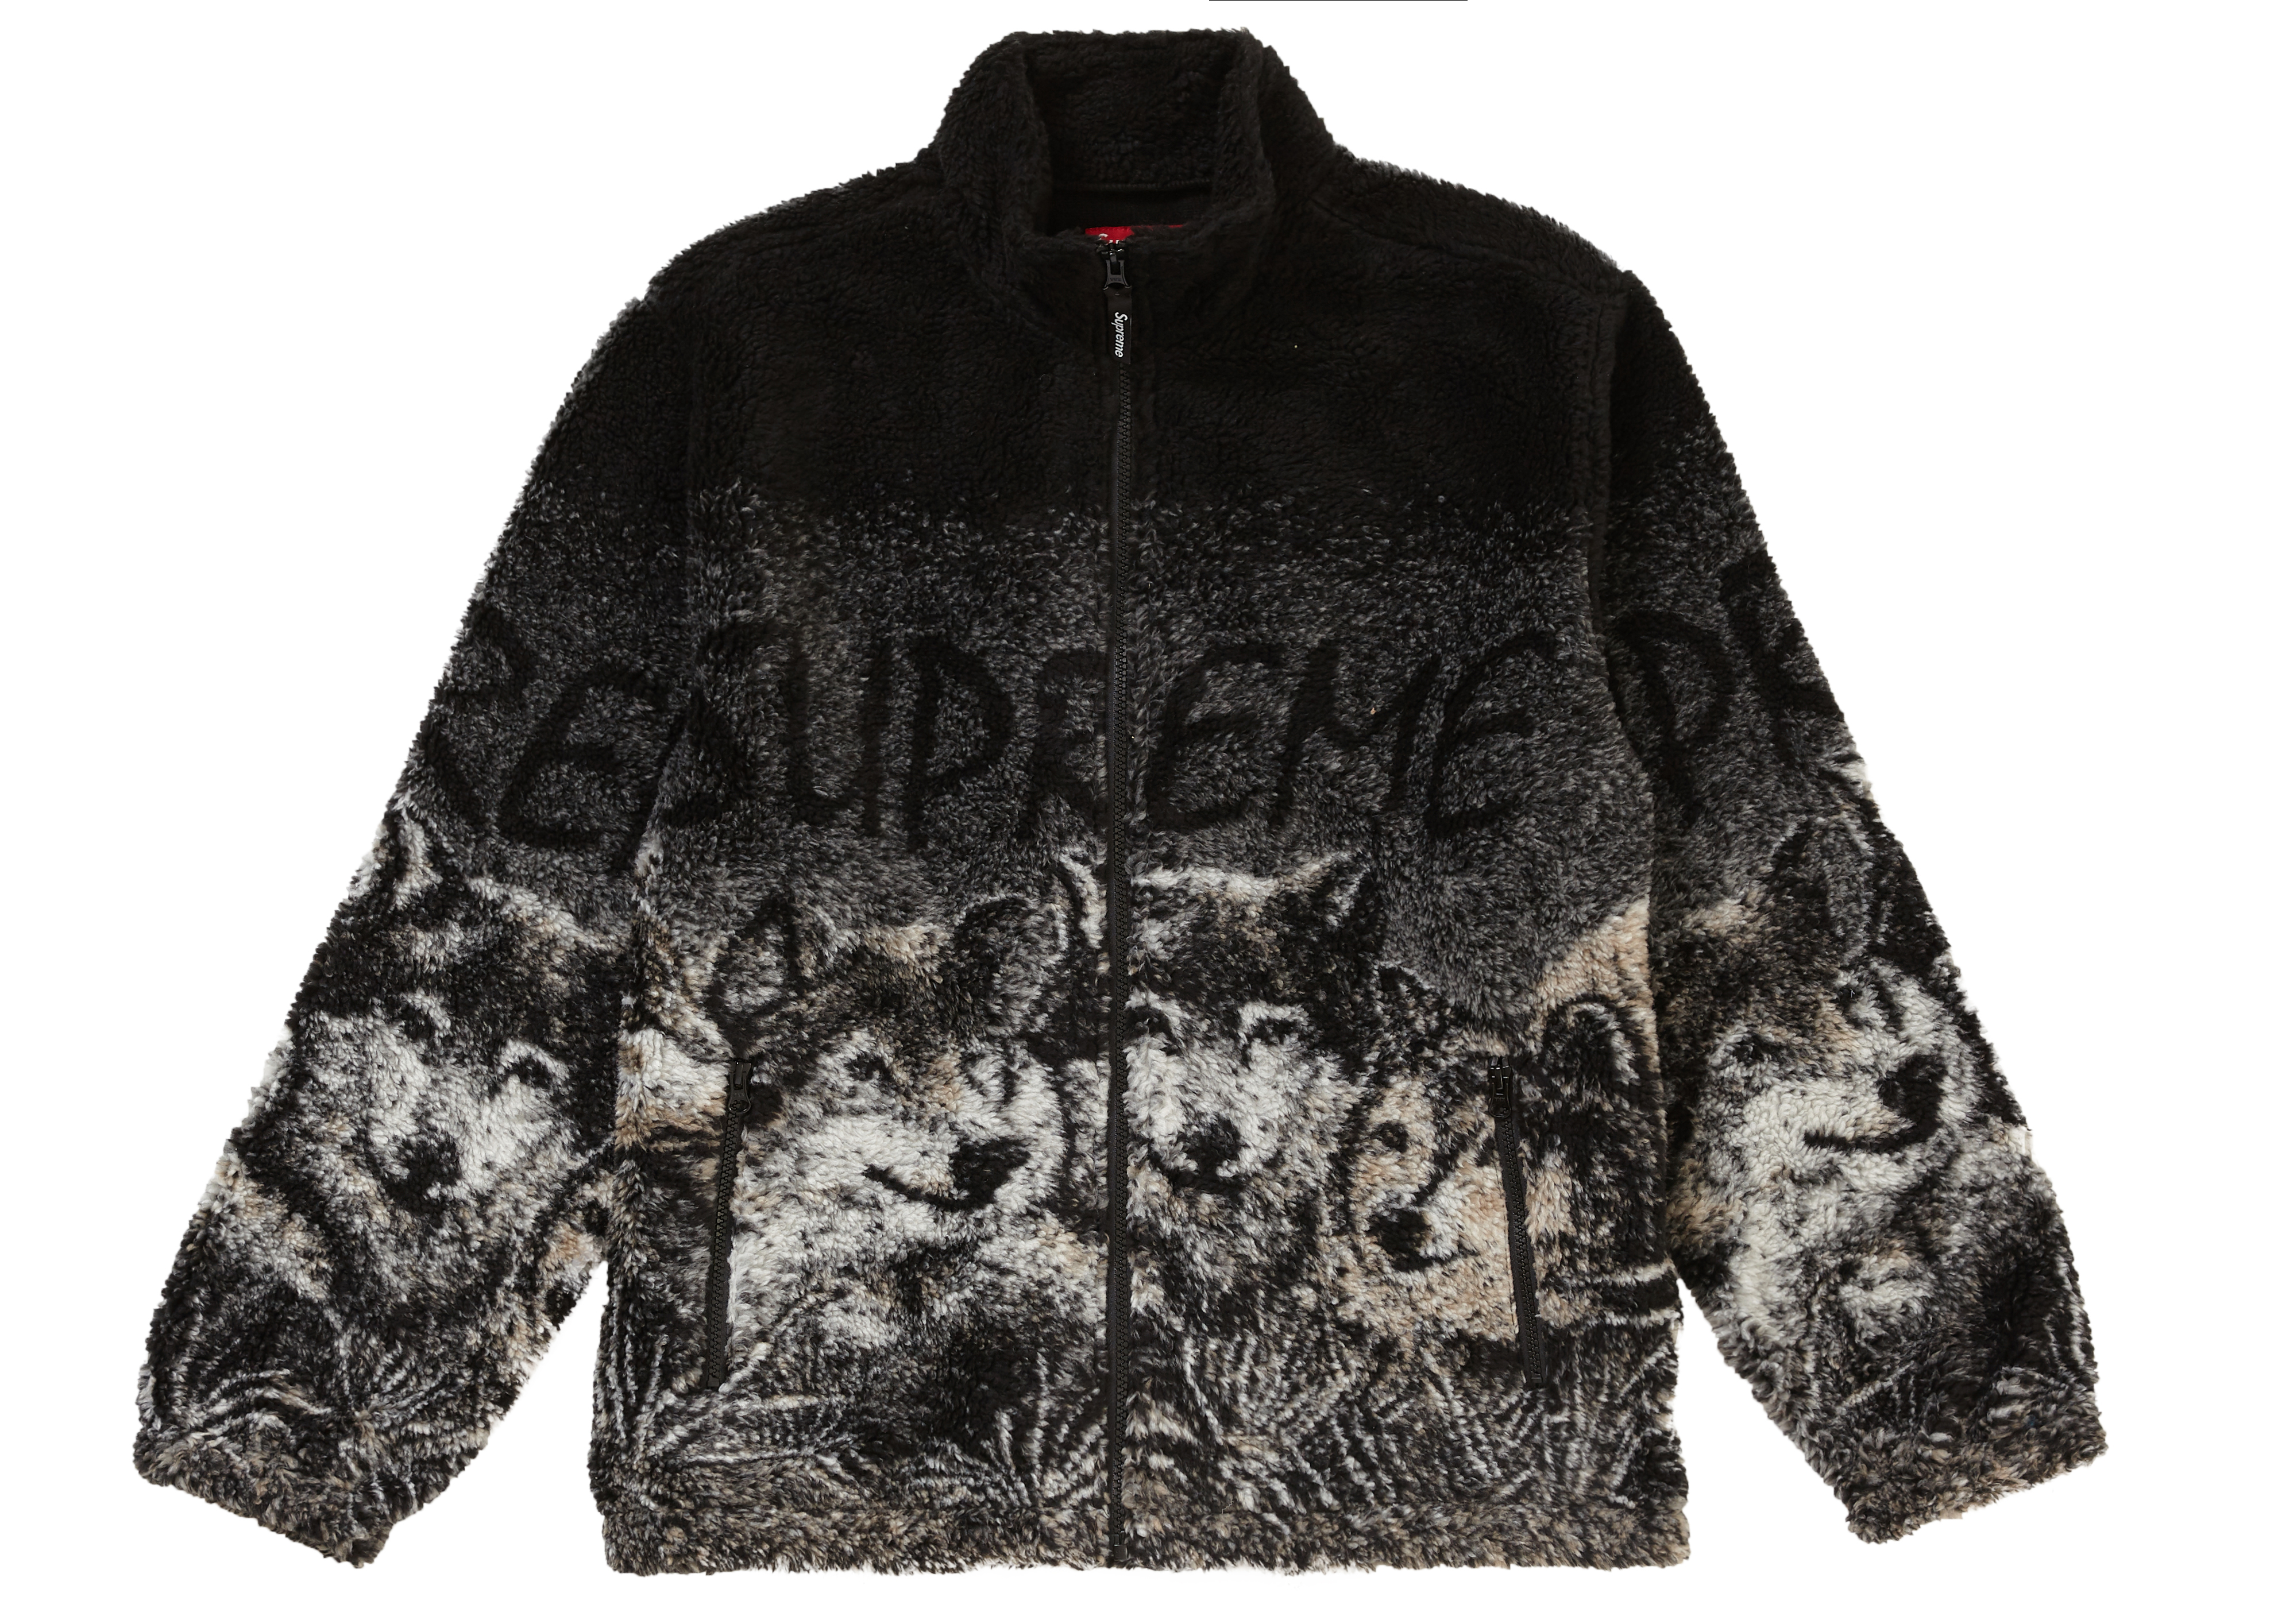 Supreme Wolf Fleece Jacket Black